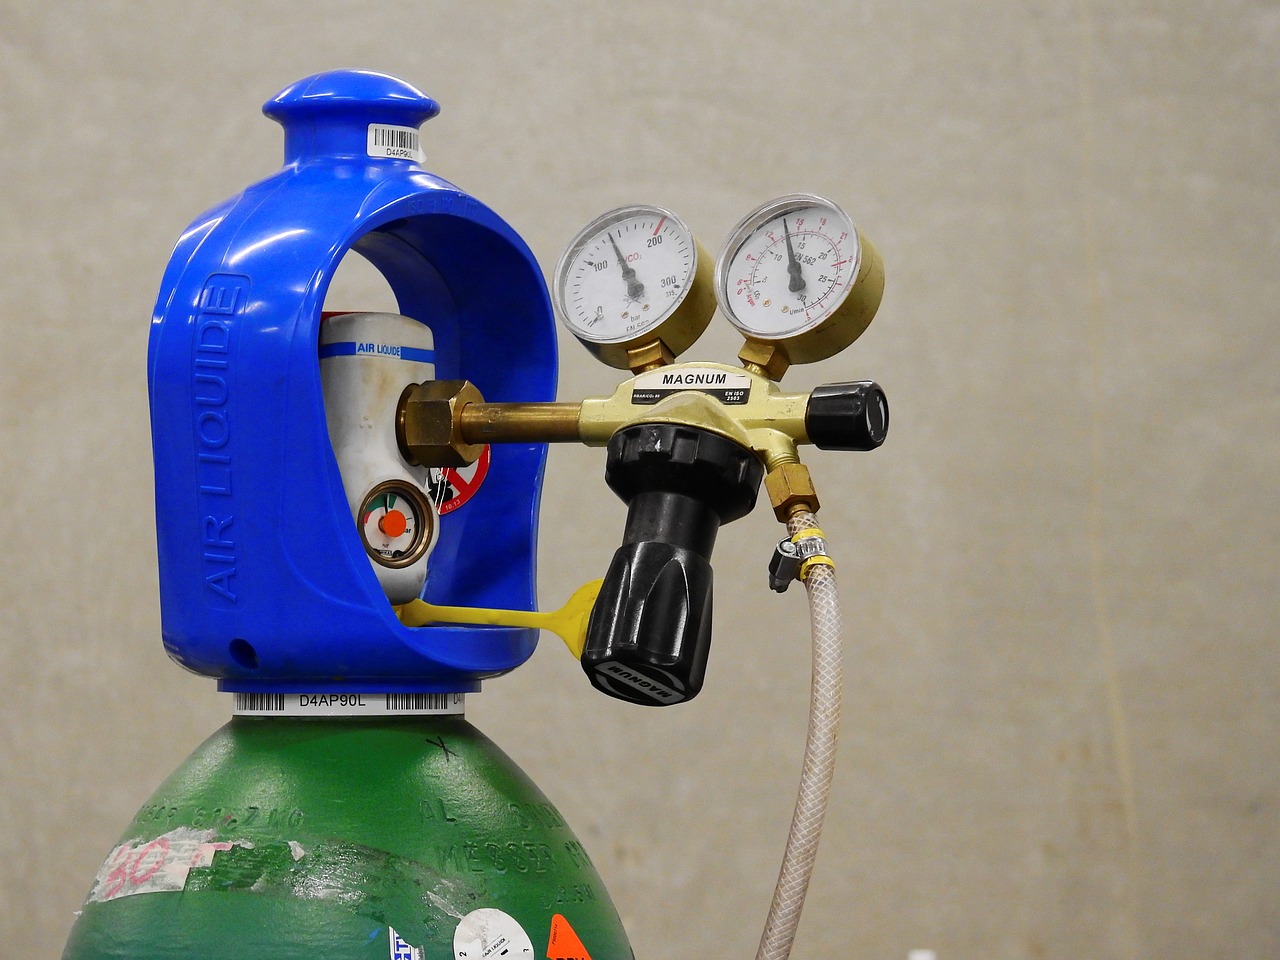 ¿Cómo elegir el regulador de gas adecuado para tus necesidades?